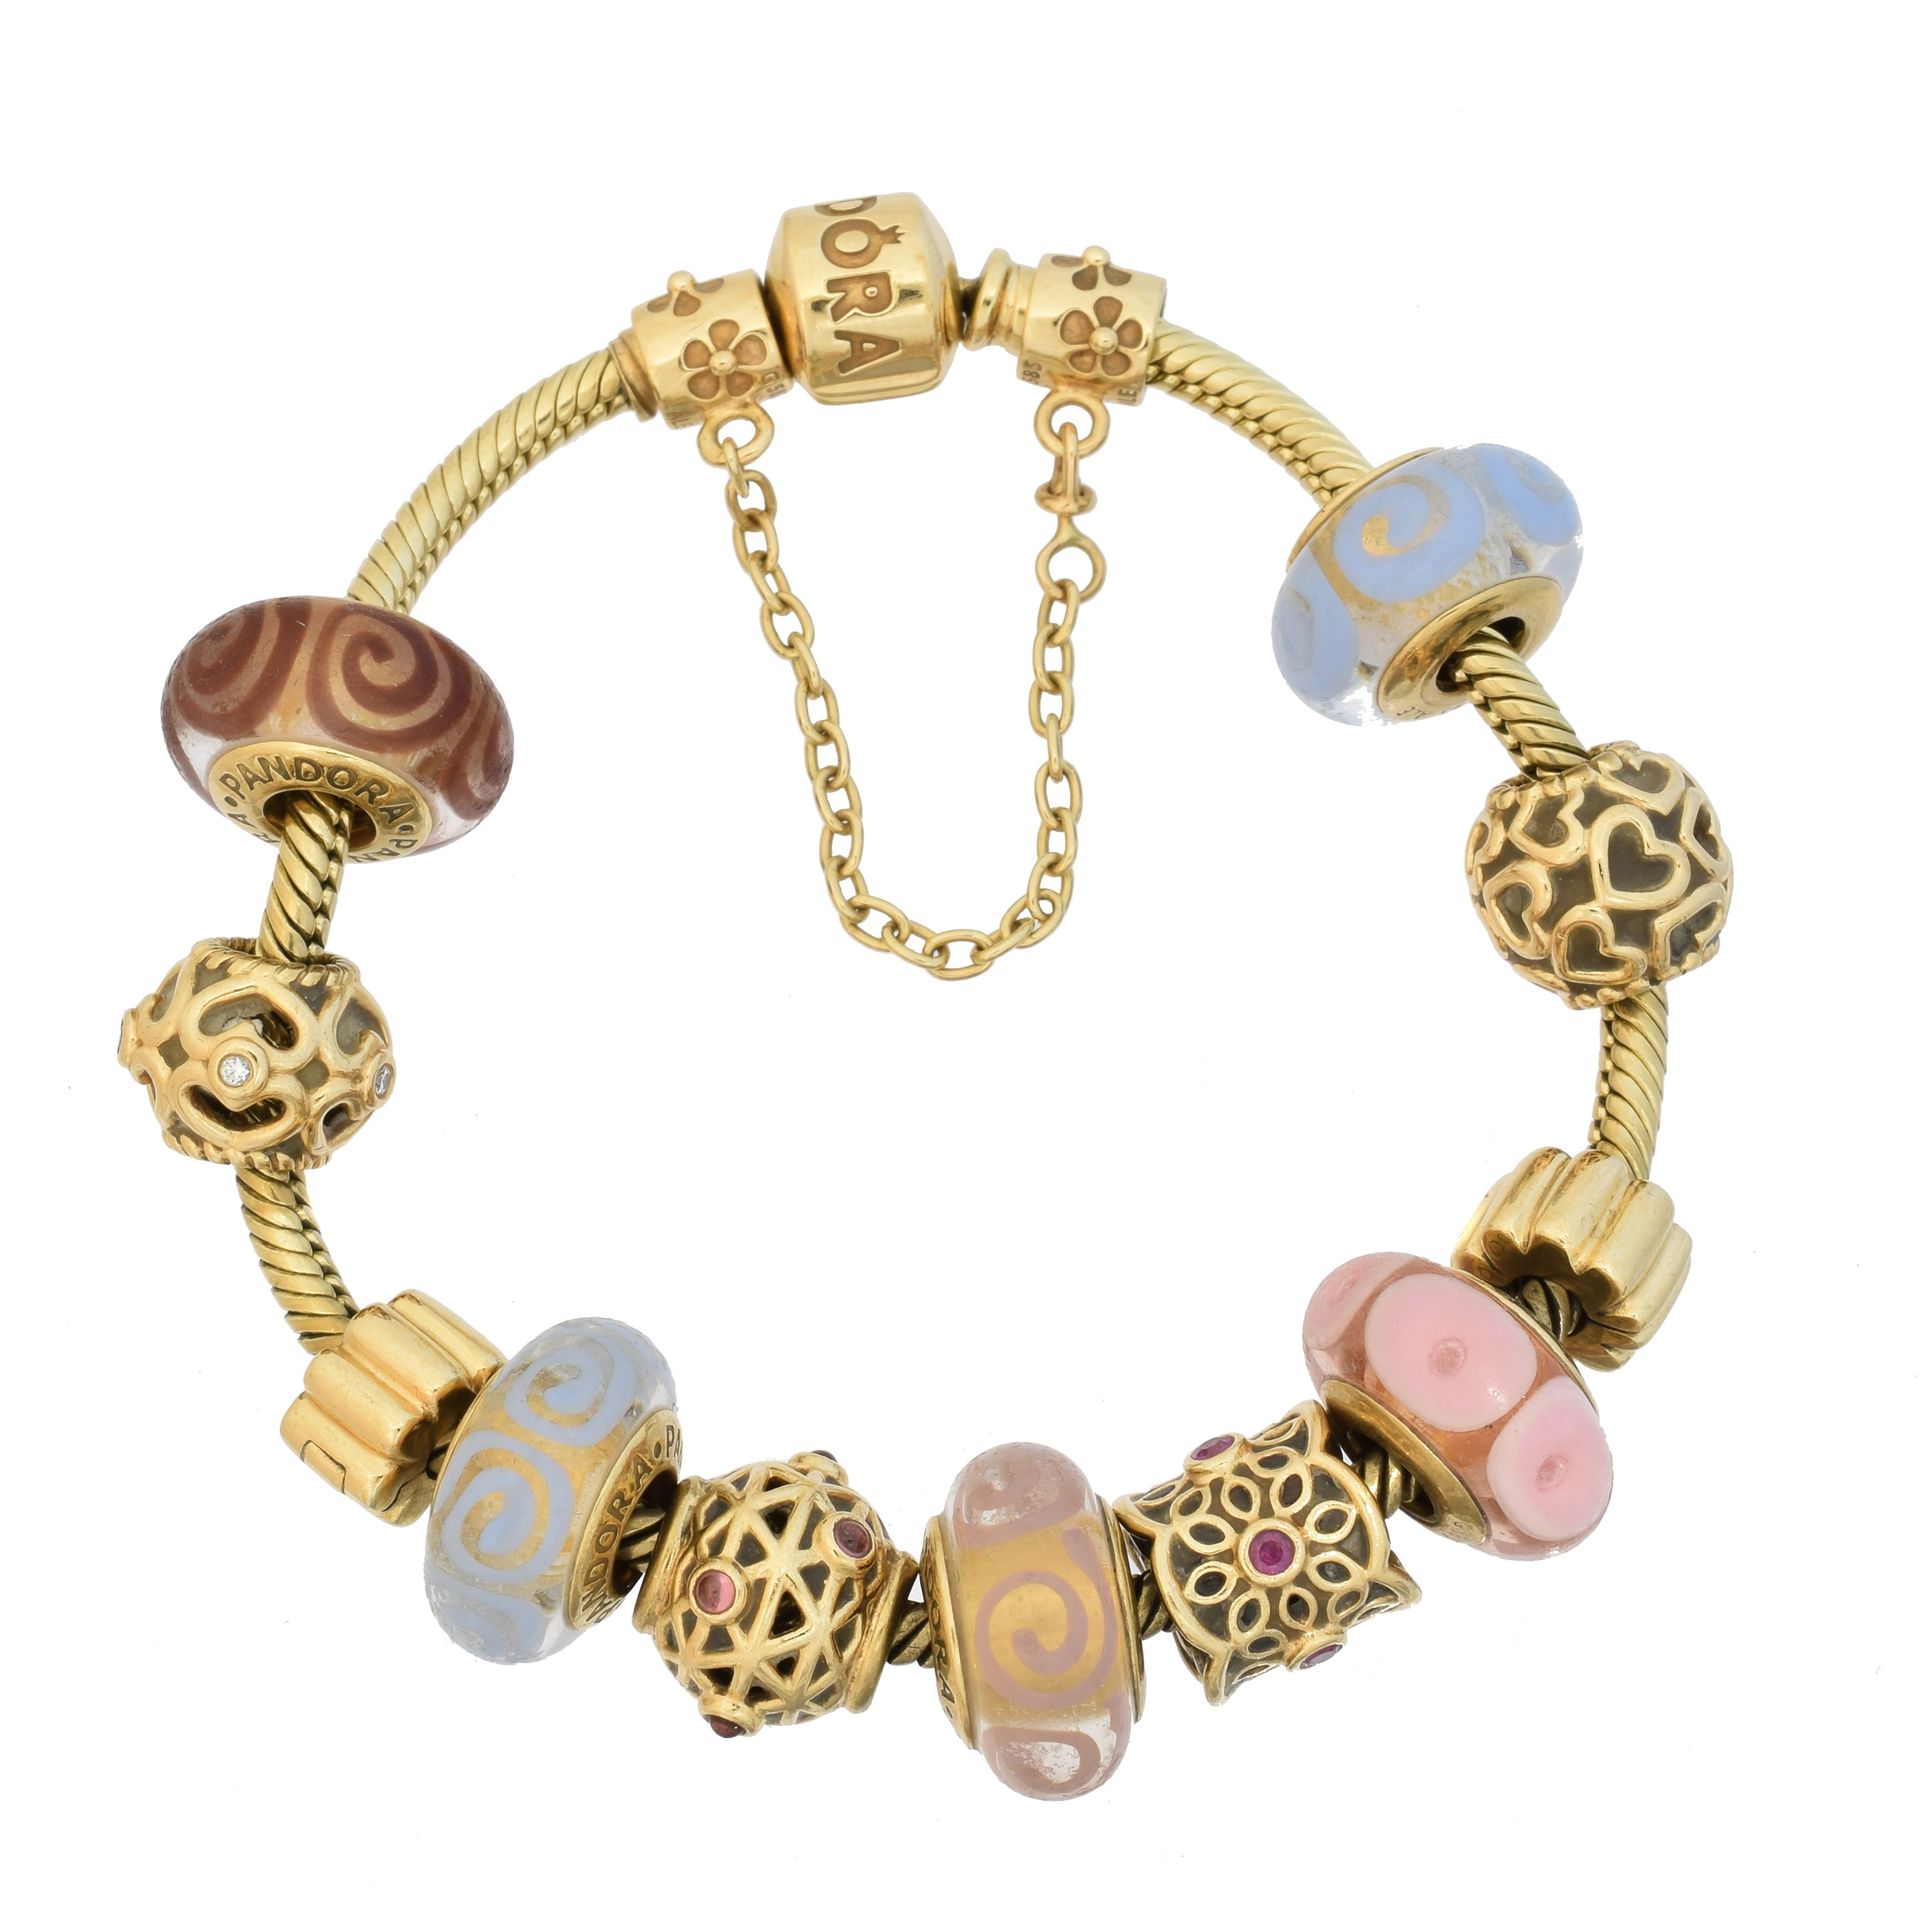 A 14ct gold Pandora charm bracelet, 
Un braccialetto di fascino di Pandora dell'&hellip;